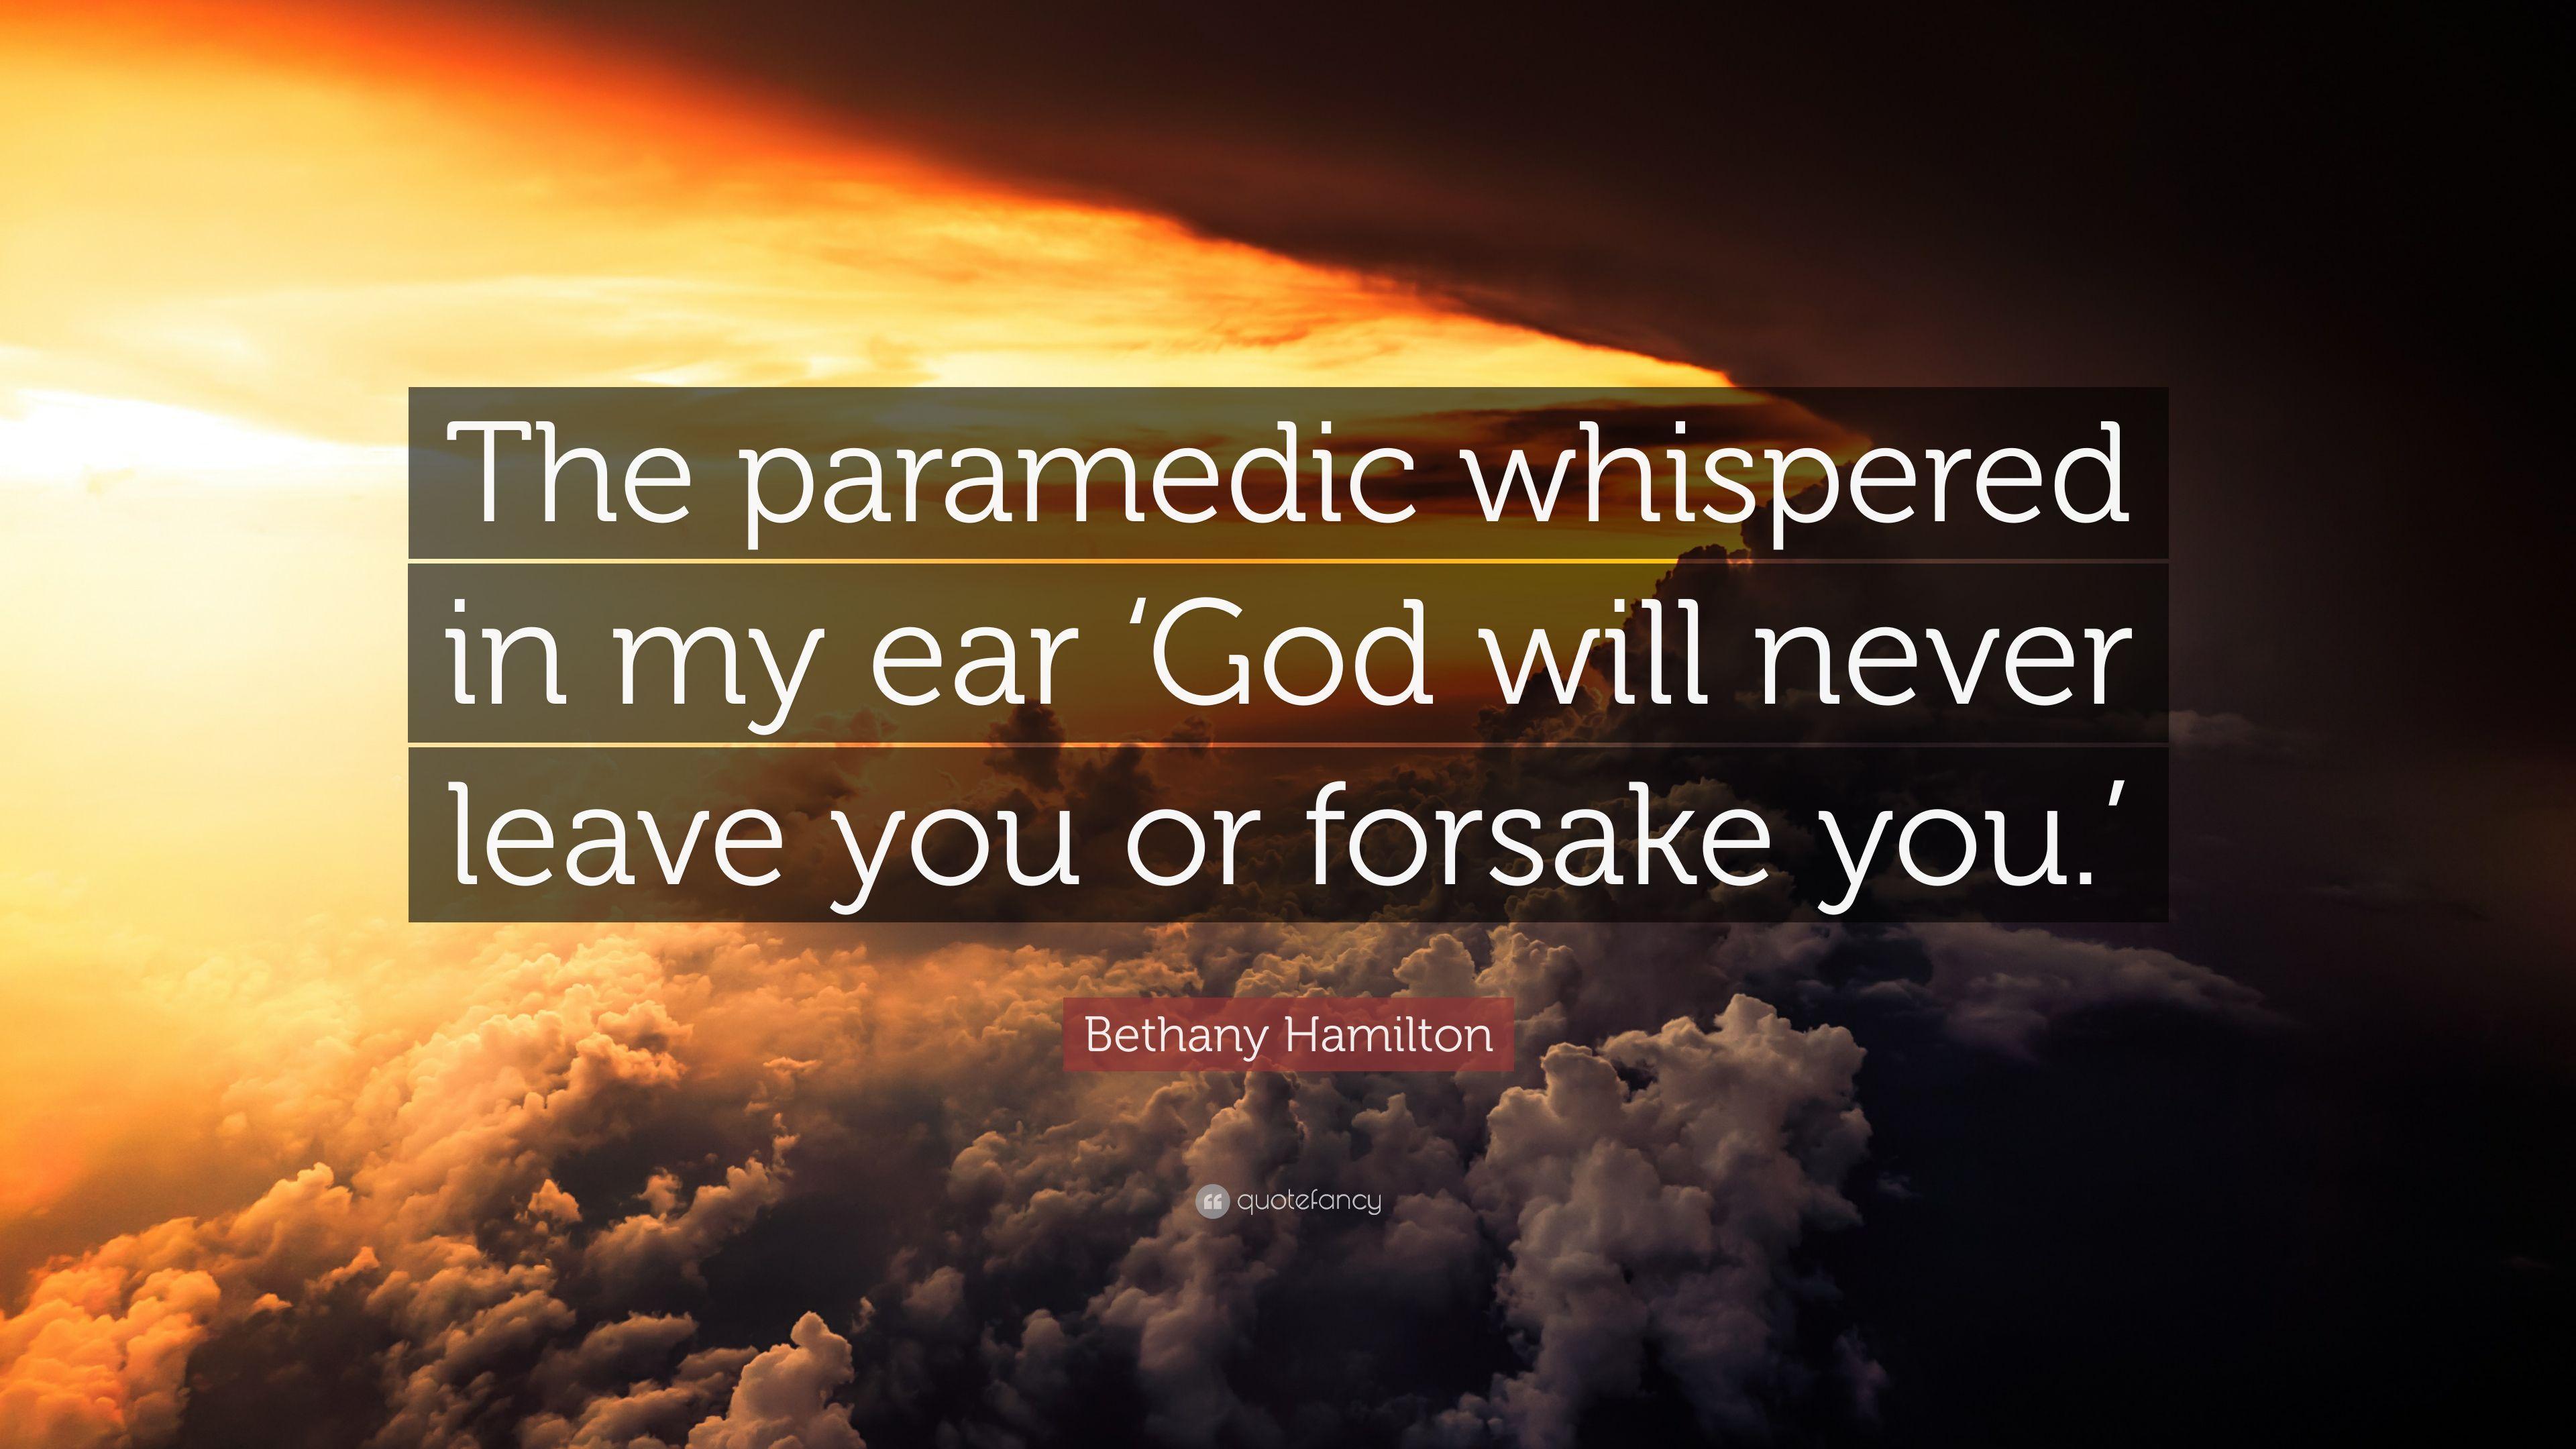 Bethany Hamilton Quote: “The paramedic whispered in my ear 'God